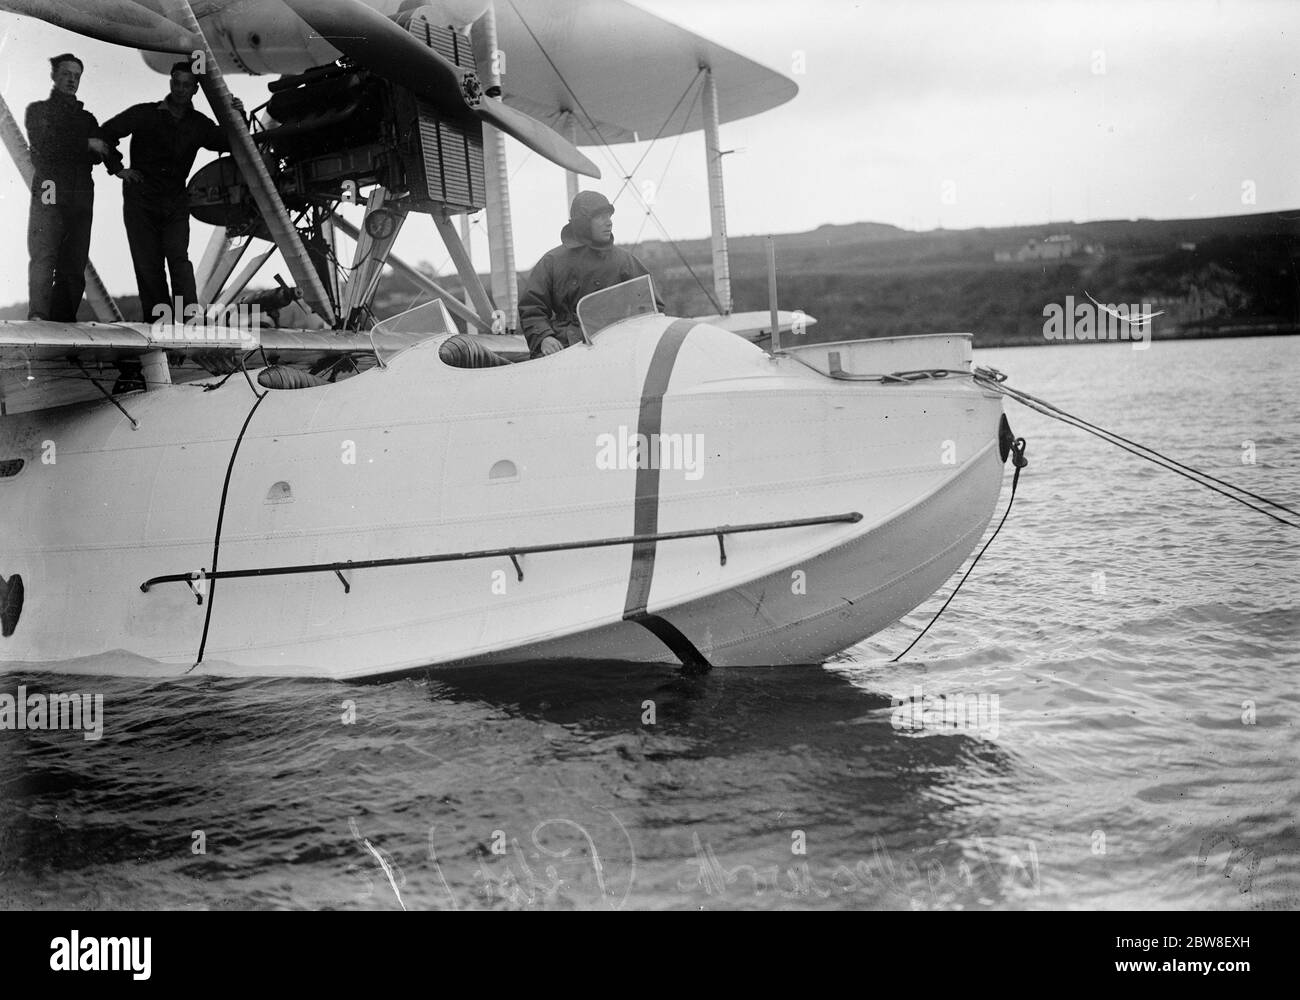 Start des großen Luft-Abenteuer . Vier fliegende Boote ab nach Singapur von Cattewater, Plymouth. Wigglesworth (Pilot). 17. Oktober 1927 Stockfoto